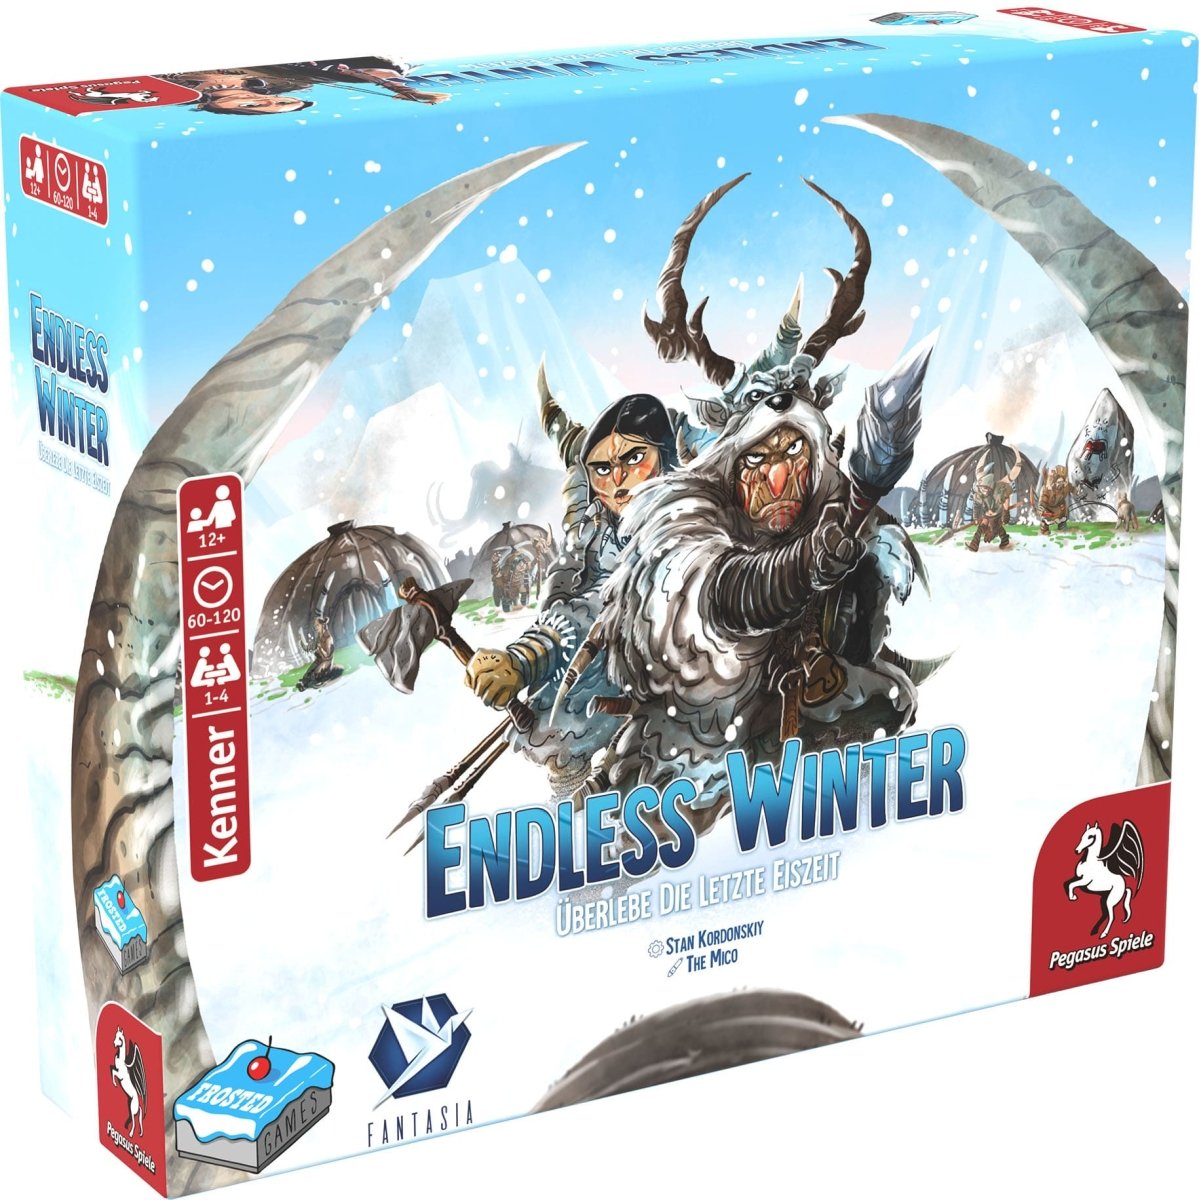 Endless Winter - Spielefürst